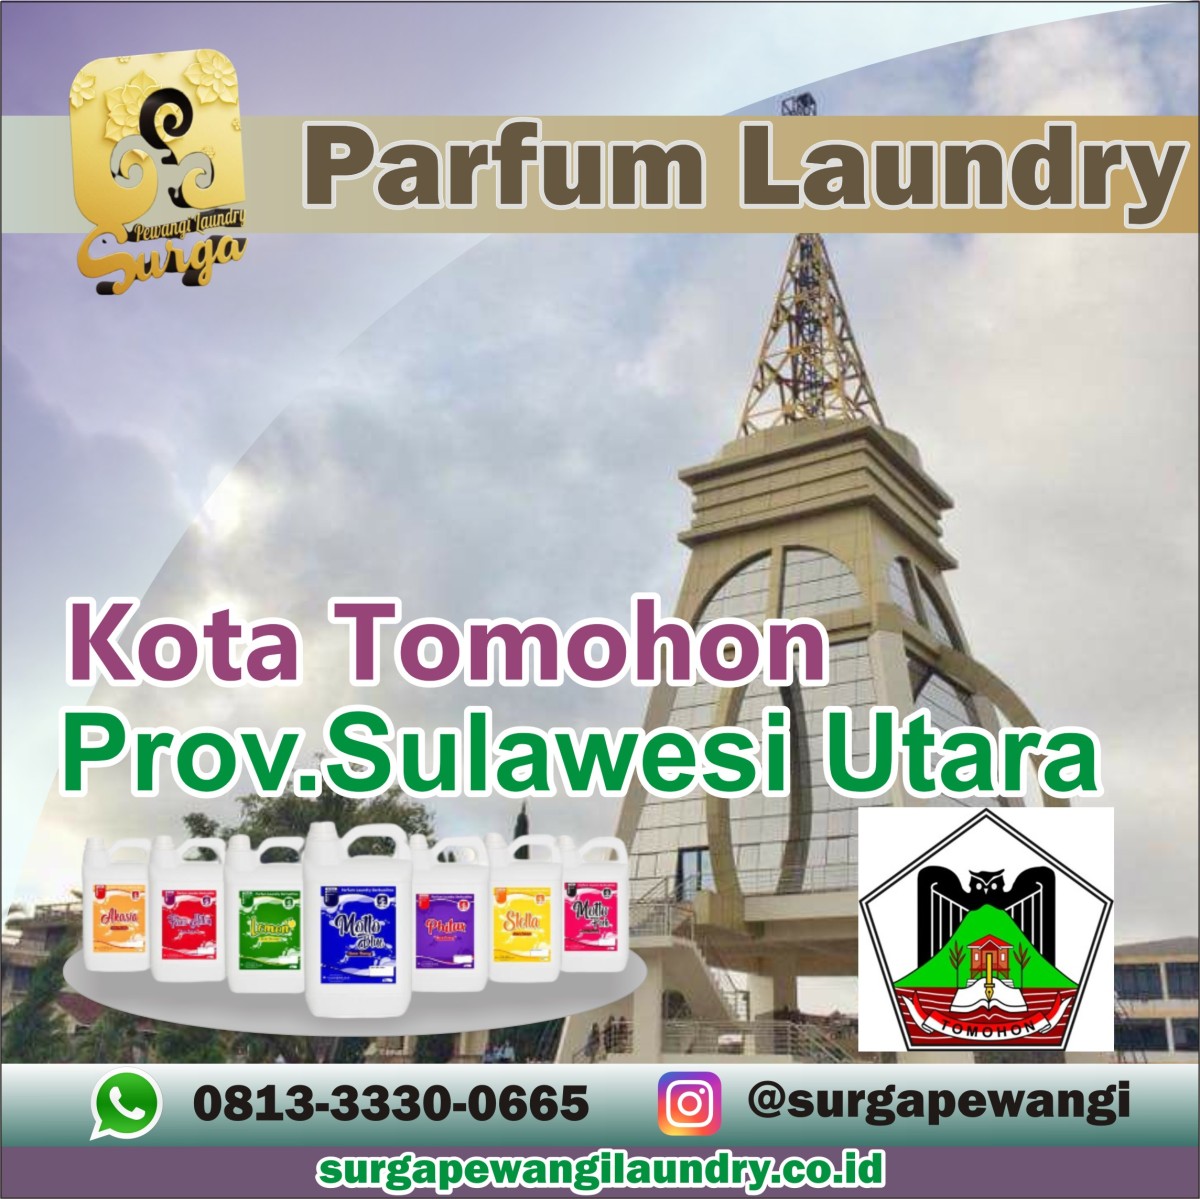 Parfum Laundry Kota Tomohon, Sulawesi Utara